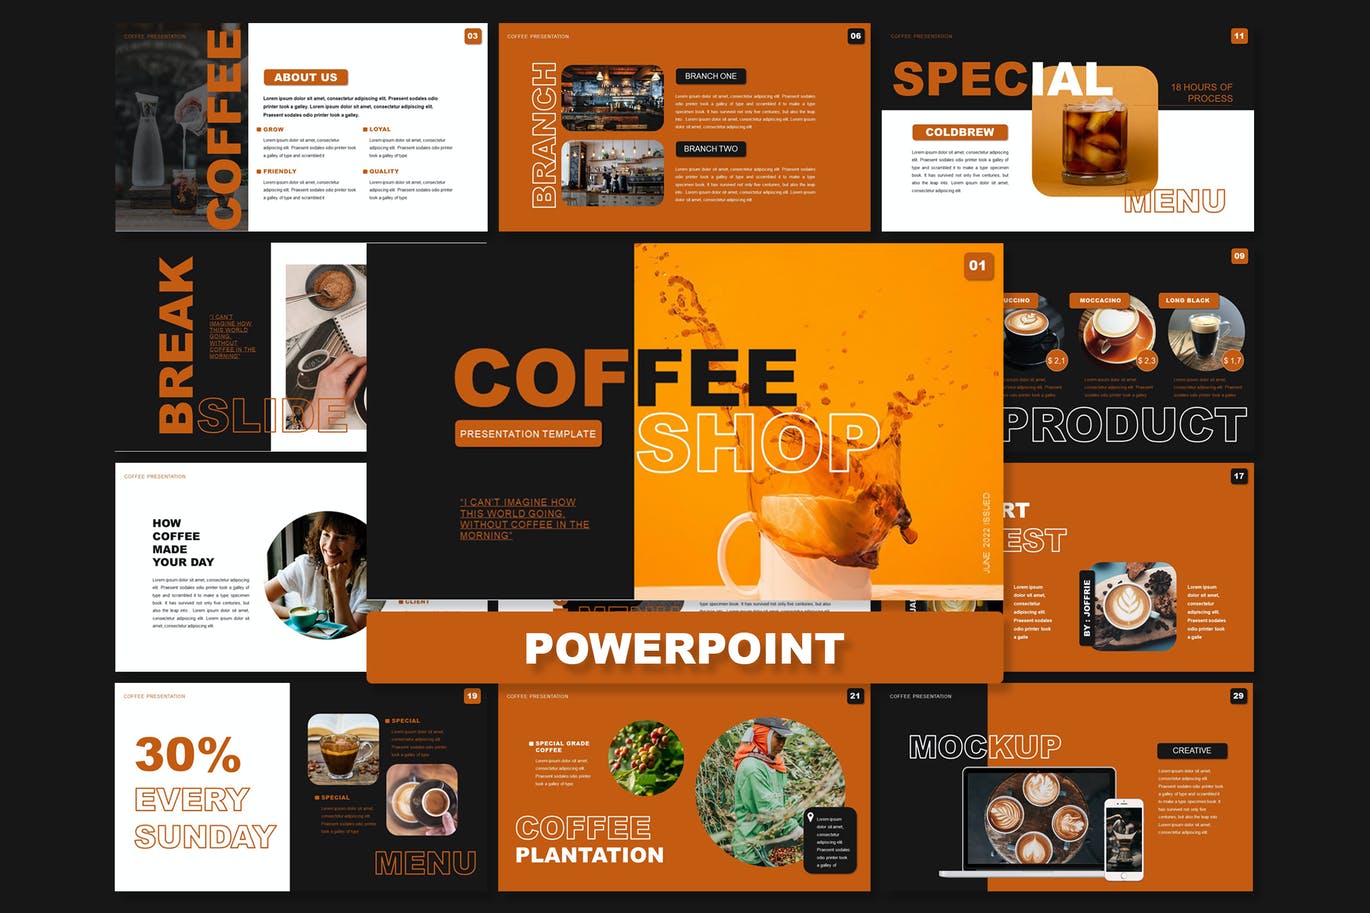 咖啡行业PPT幻灯片模板素材 Coffee Shop – Powerpoint 幻灯图表 第1张